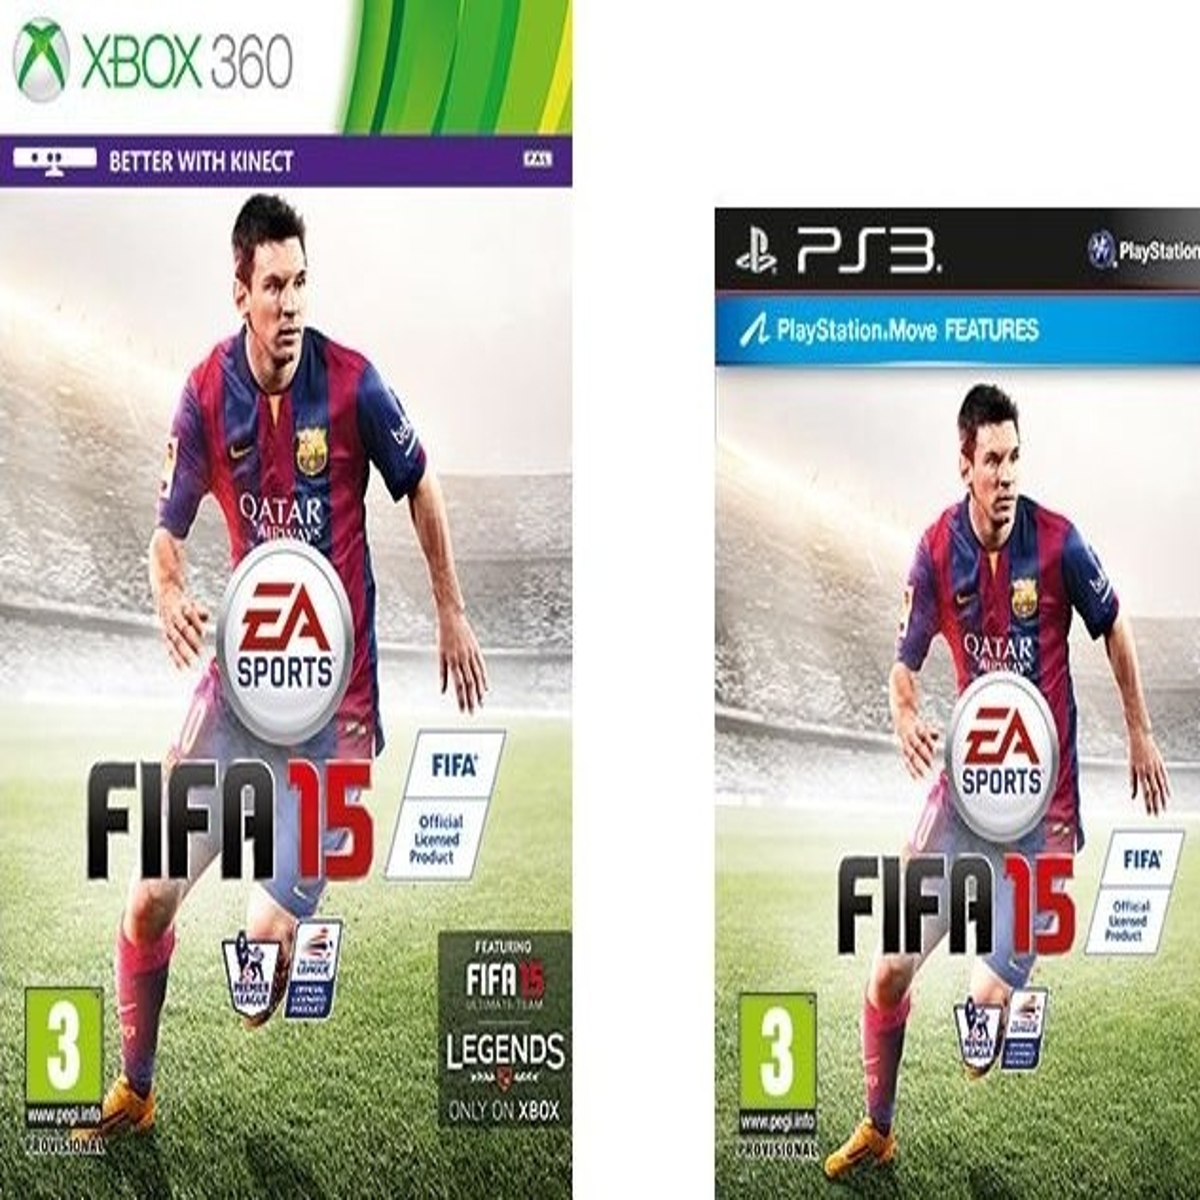 FIFA 22 PS4 Vs eFootball 22 PS3 